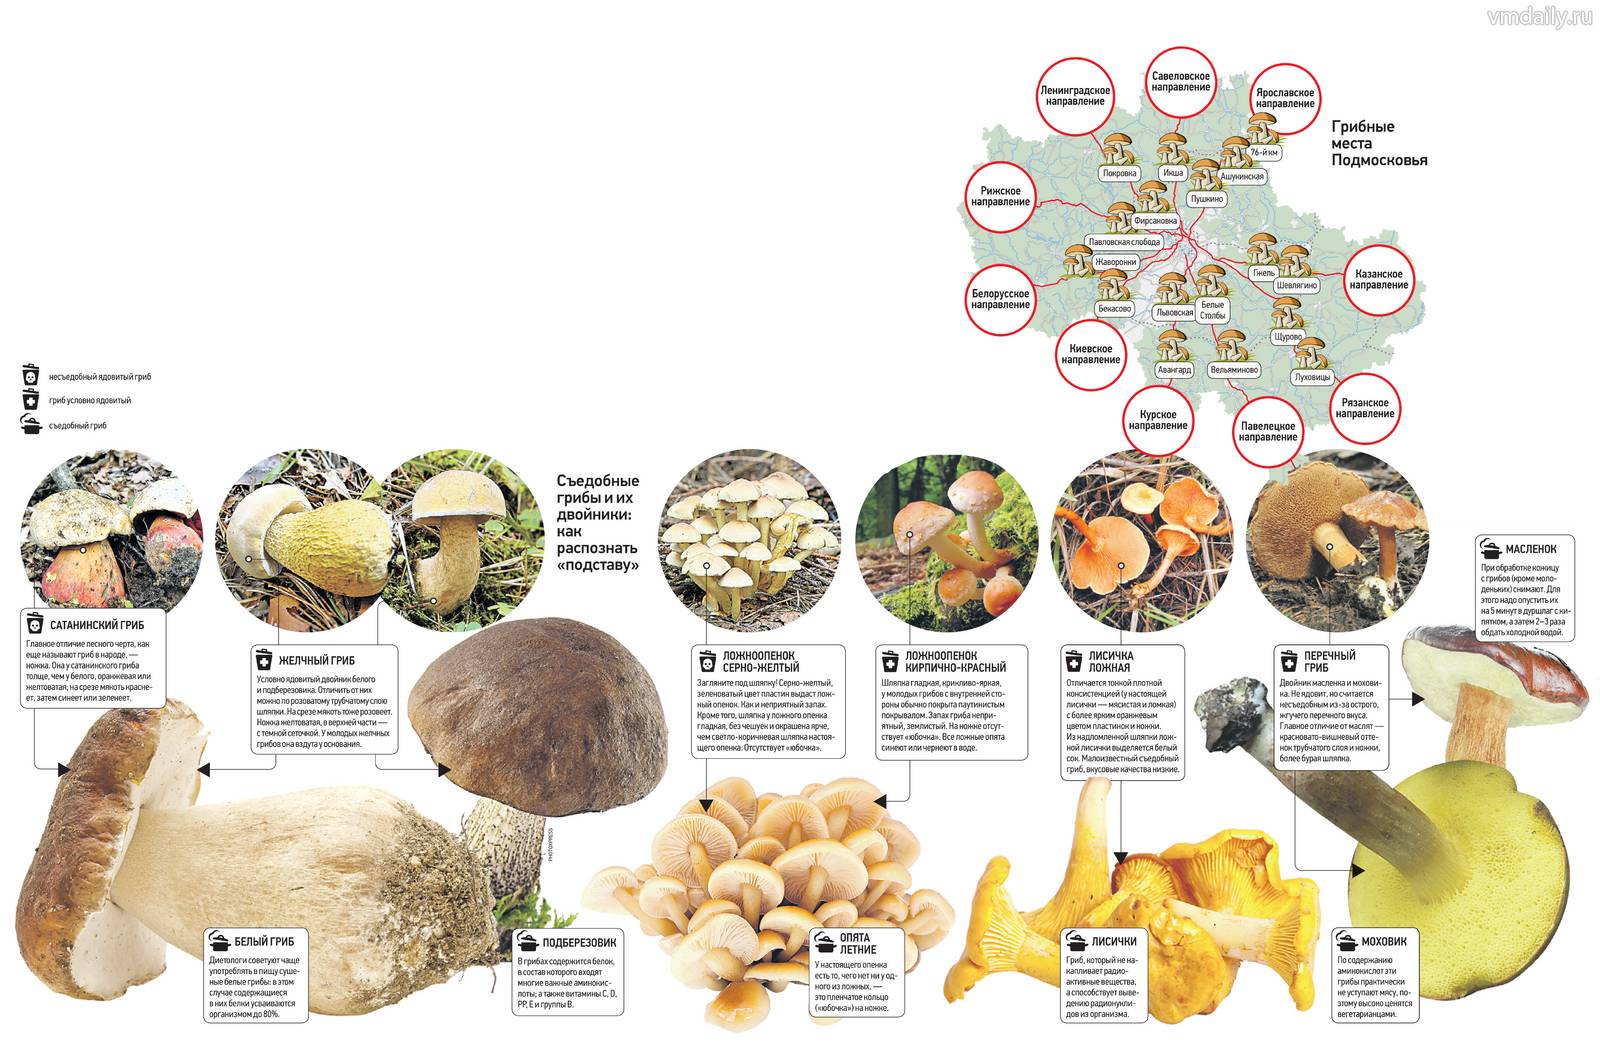 Съедобные грибы в подмосковье: какие растут и где их собирать- фото и описание +видео